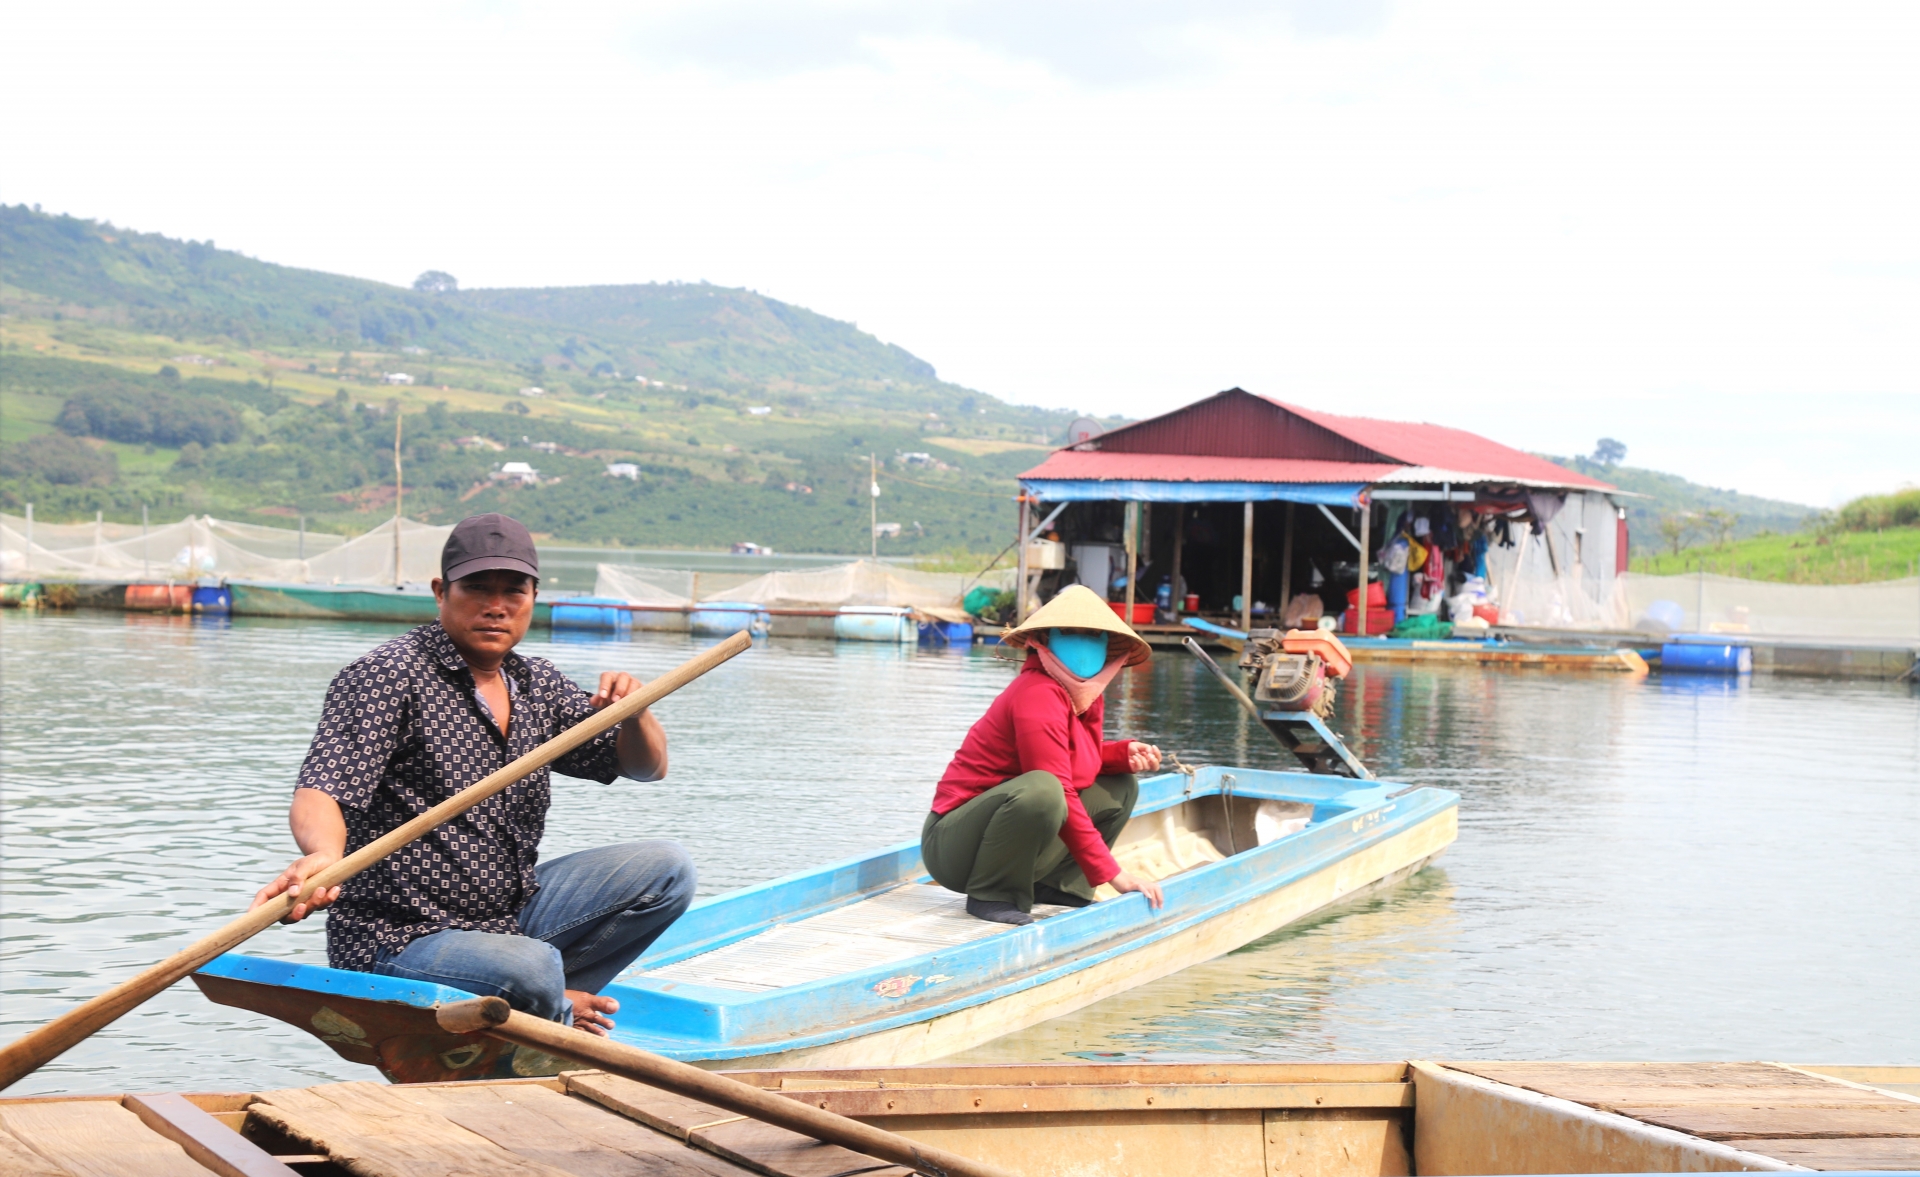 Trên hồ Đồng Nai 2 hiện đang có khoảng 80 hộ dân sinh sống bằng nghề đánh bắt cá và nuôi trồng thủy sản